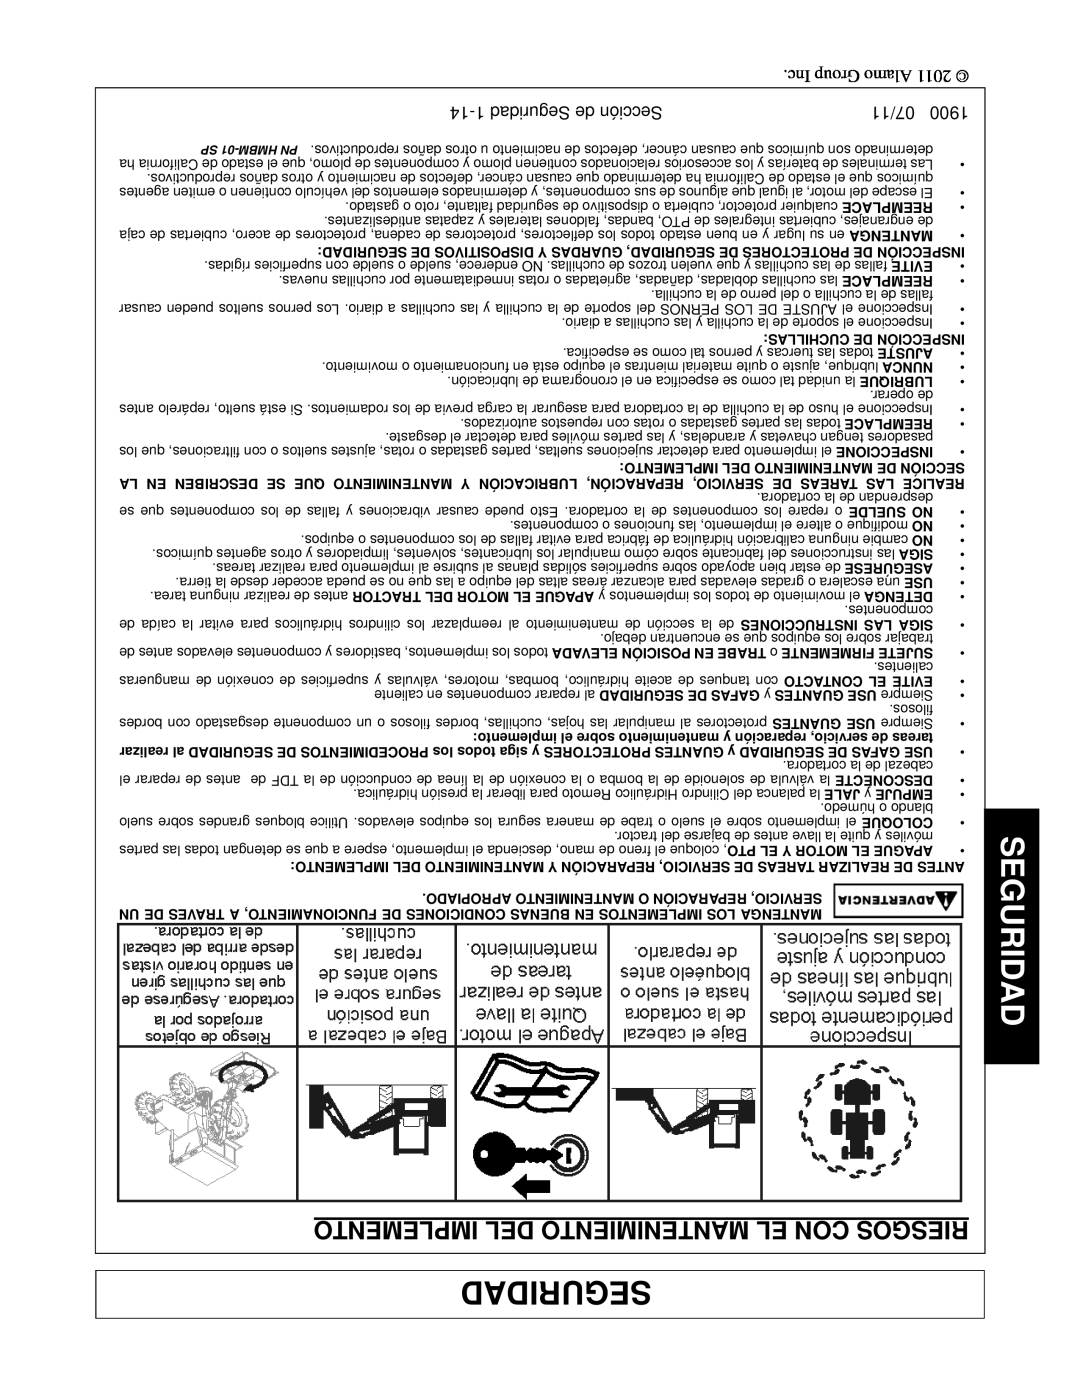 Alamo 1900 manual Implemento Del Mantenimiento El Con Riesgos, 14-1Seguridad de Sección, 07/11 